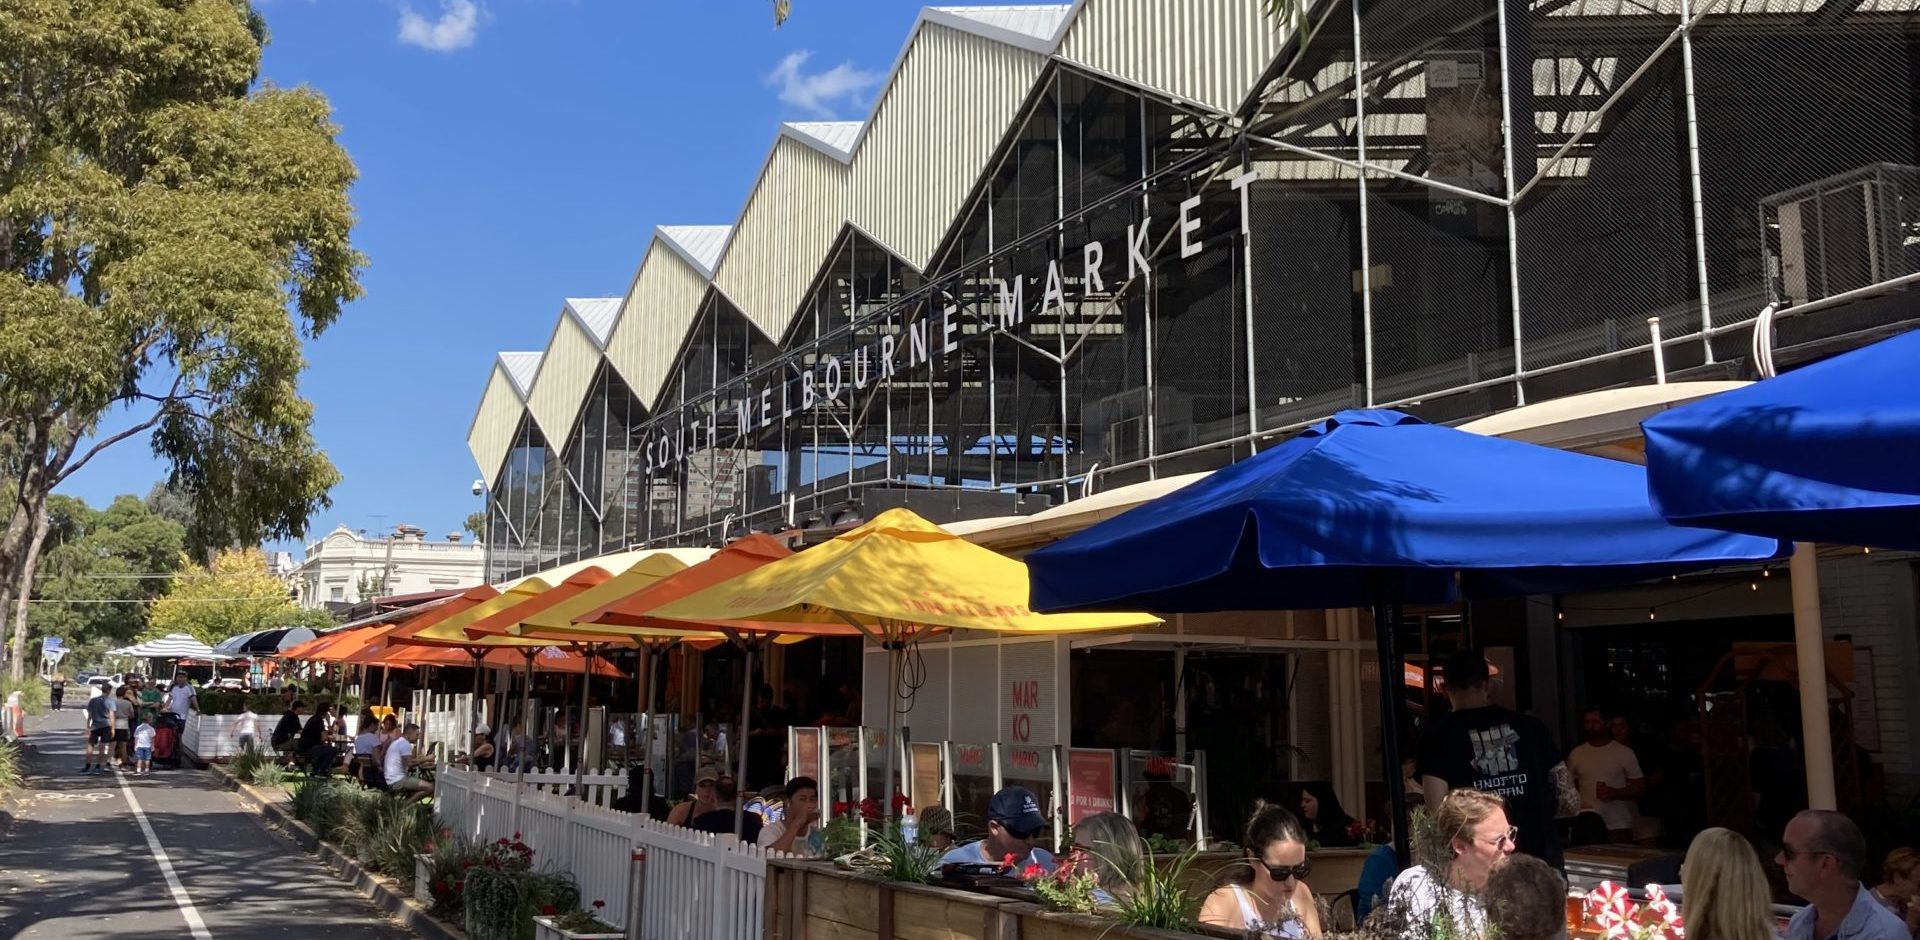 South Melbourne Market facade